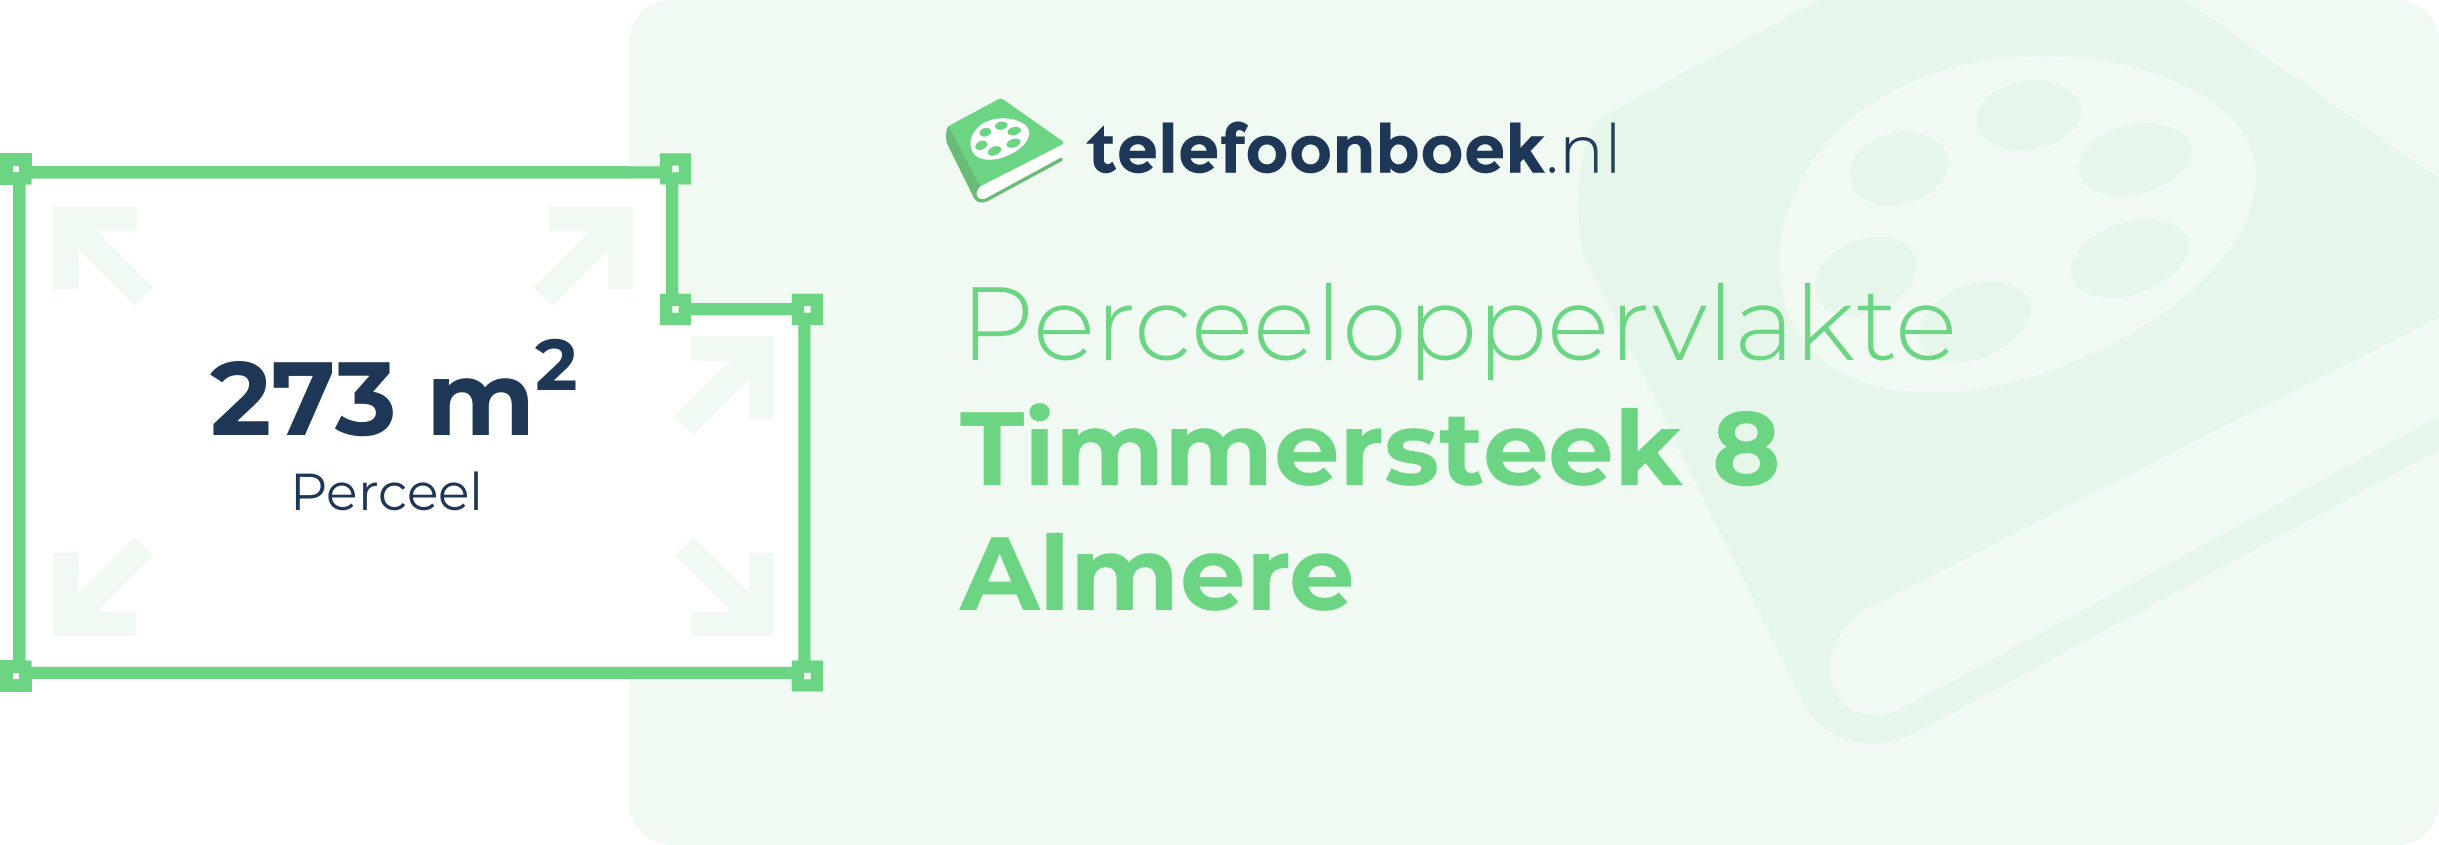 Perceeloppervlakte Timmersteek 8 Almere